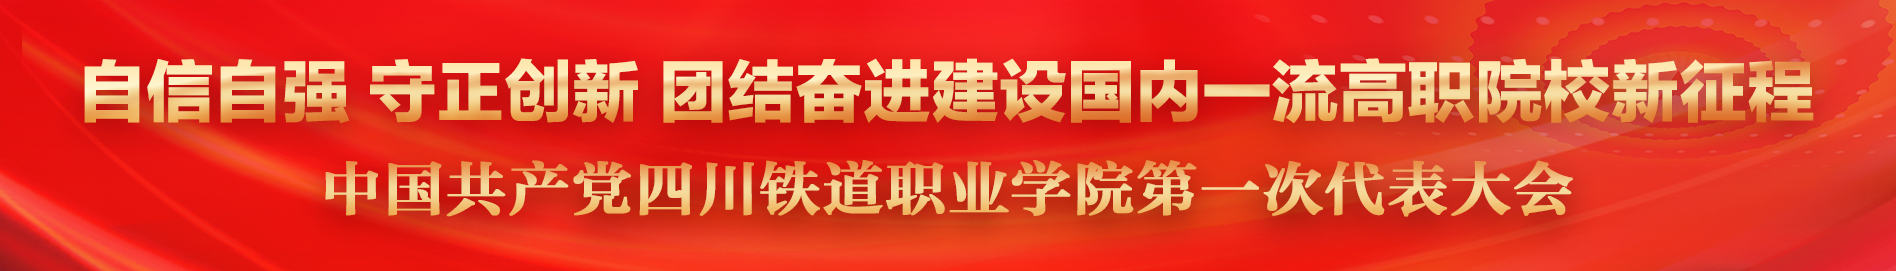 中国共产党四川铁道职业学院第一次代表大会